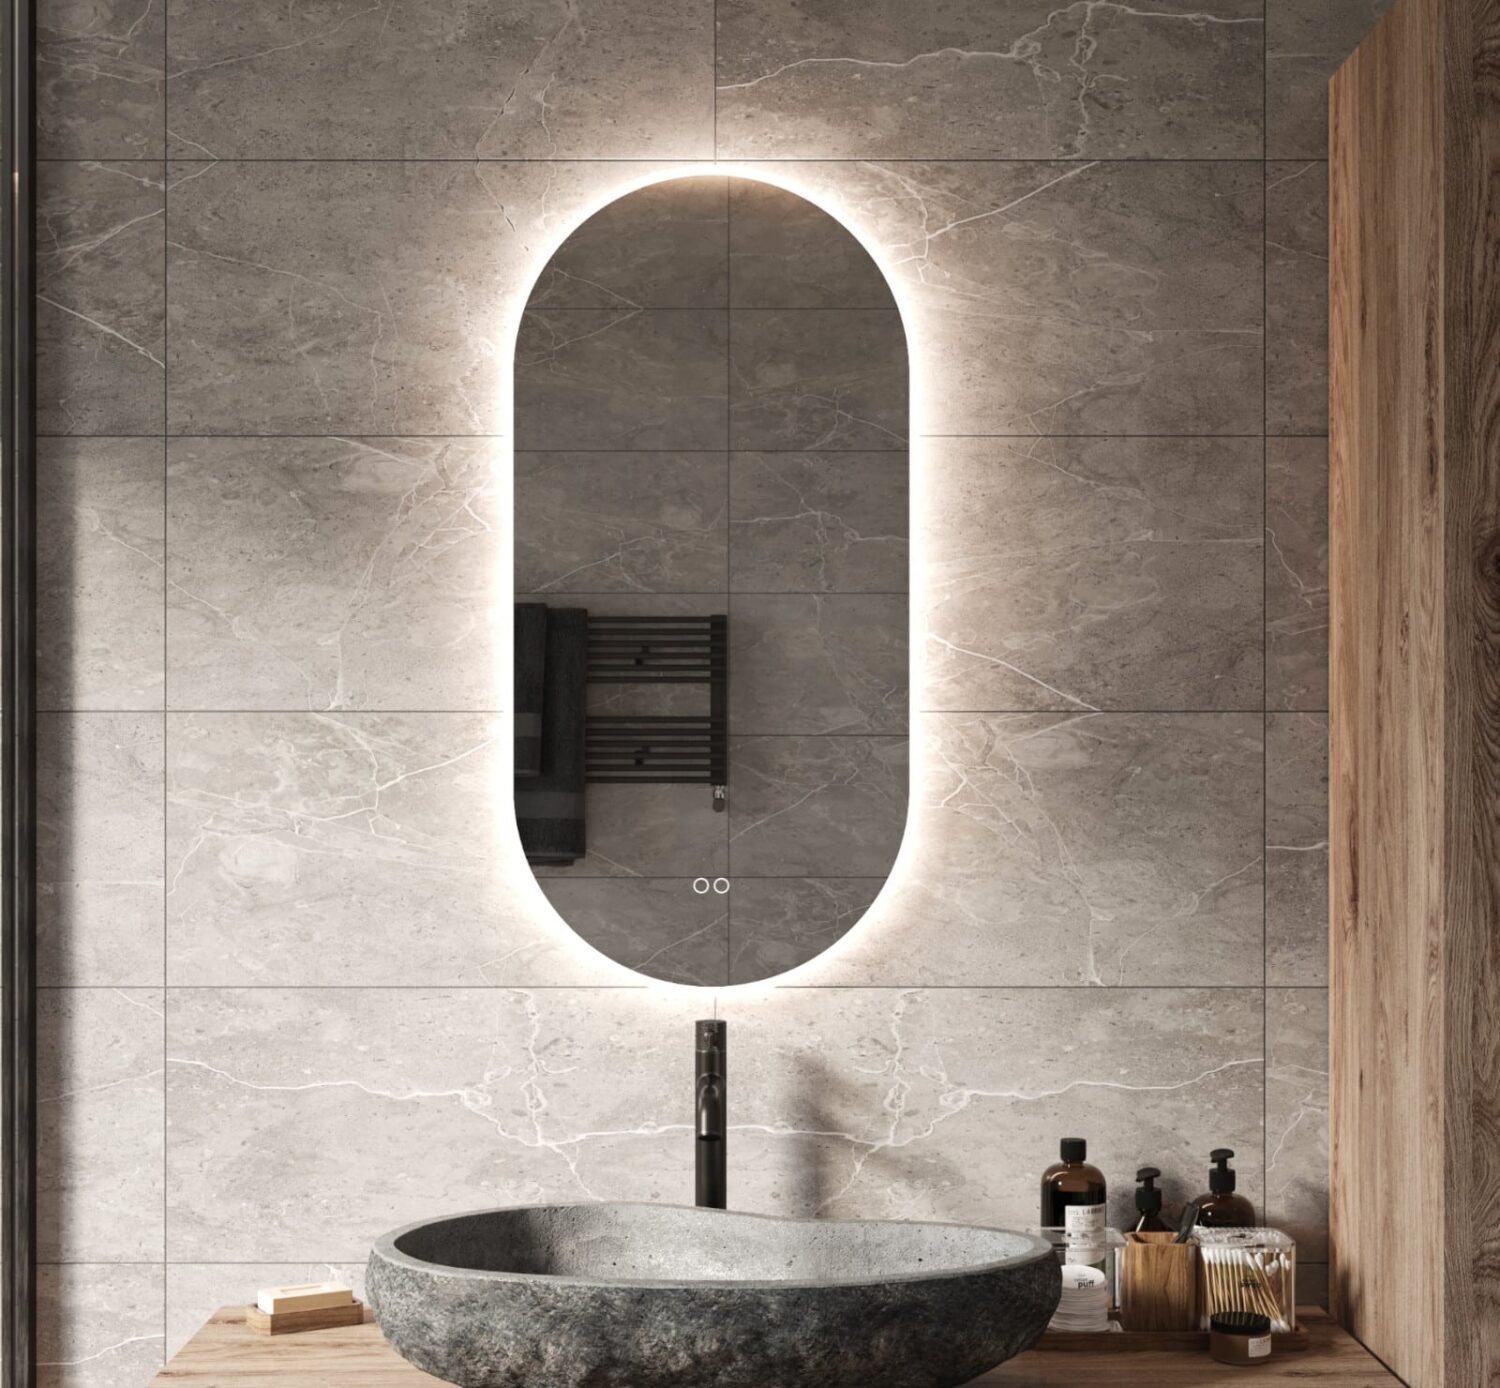 Eerbetoon reputatie tieners Ovale badkamerspiegel met LED verlichting, verwarming, instelbare  lichtkleur en dimfunctie 45x90 cm - Designspiegels